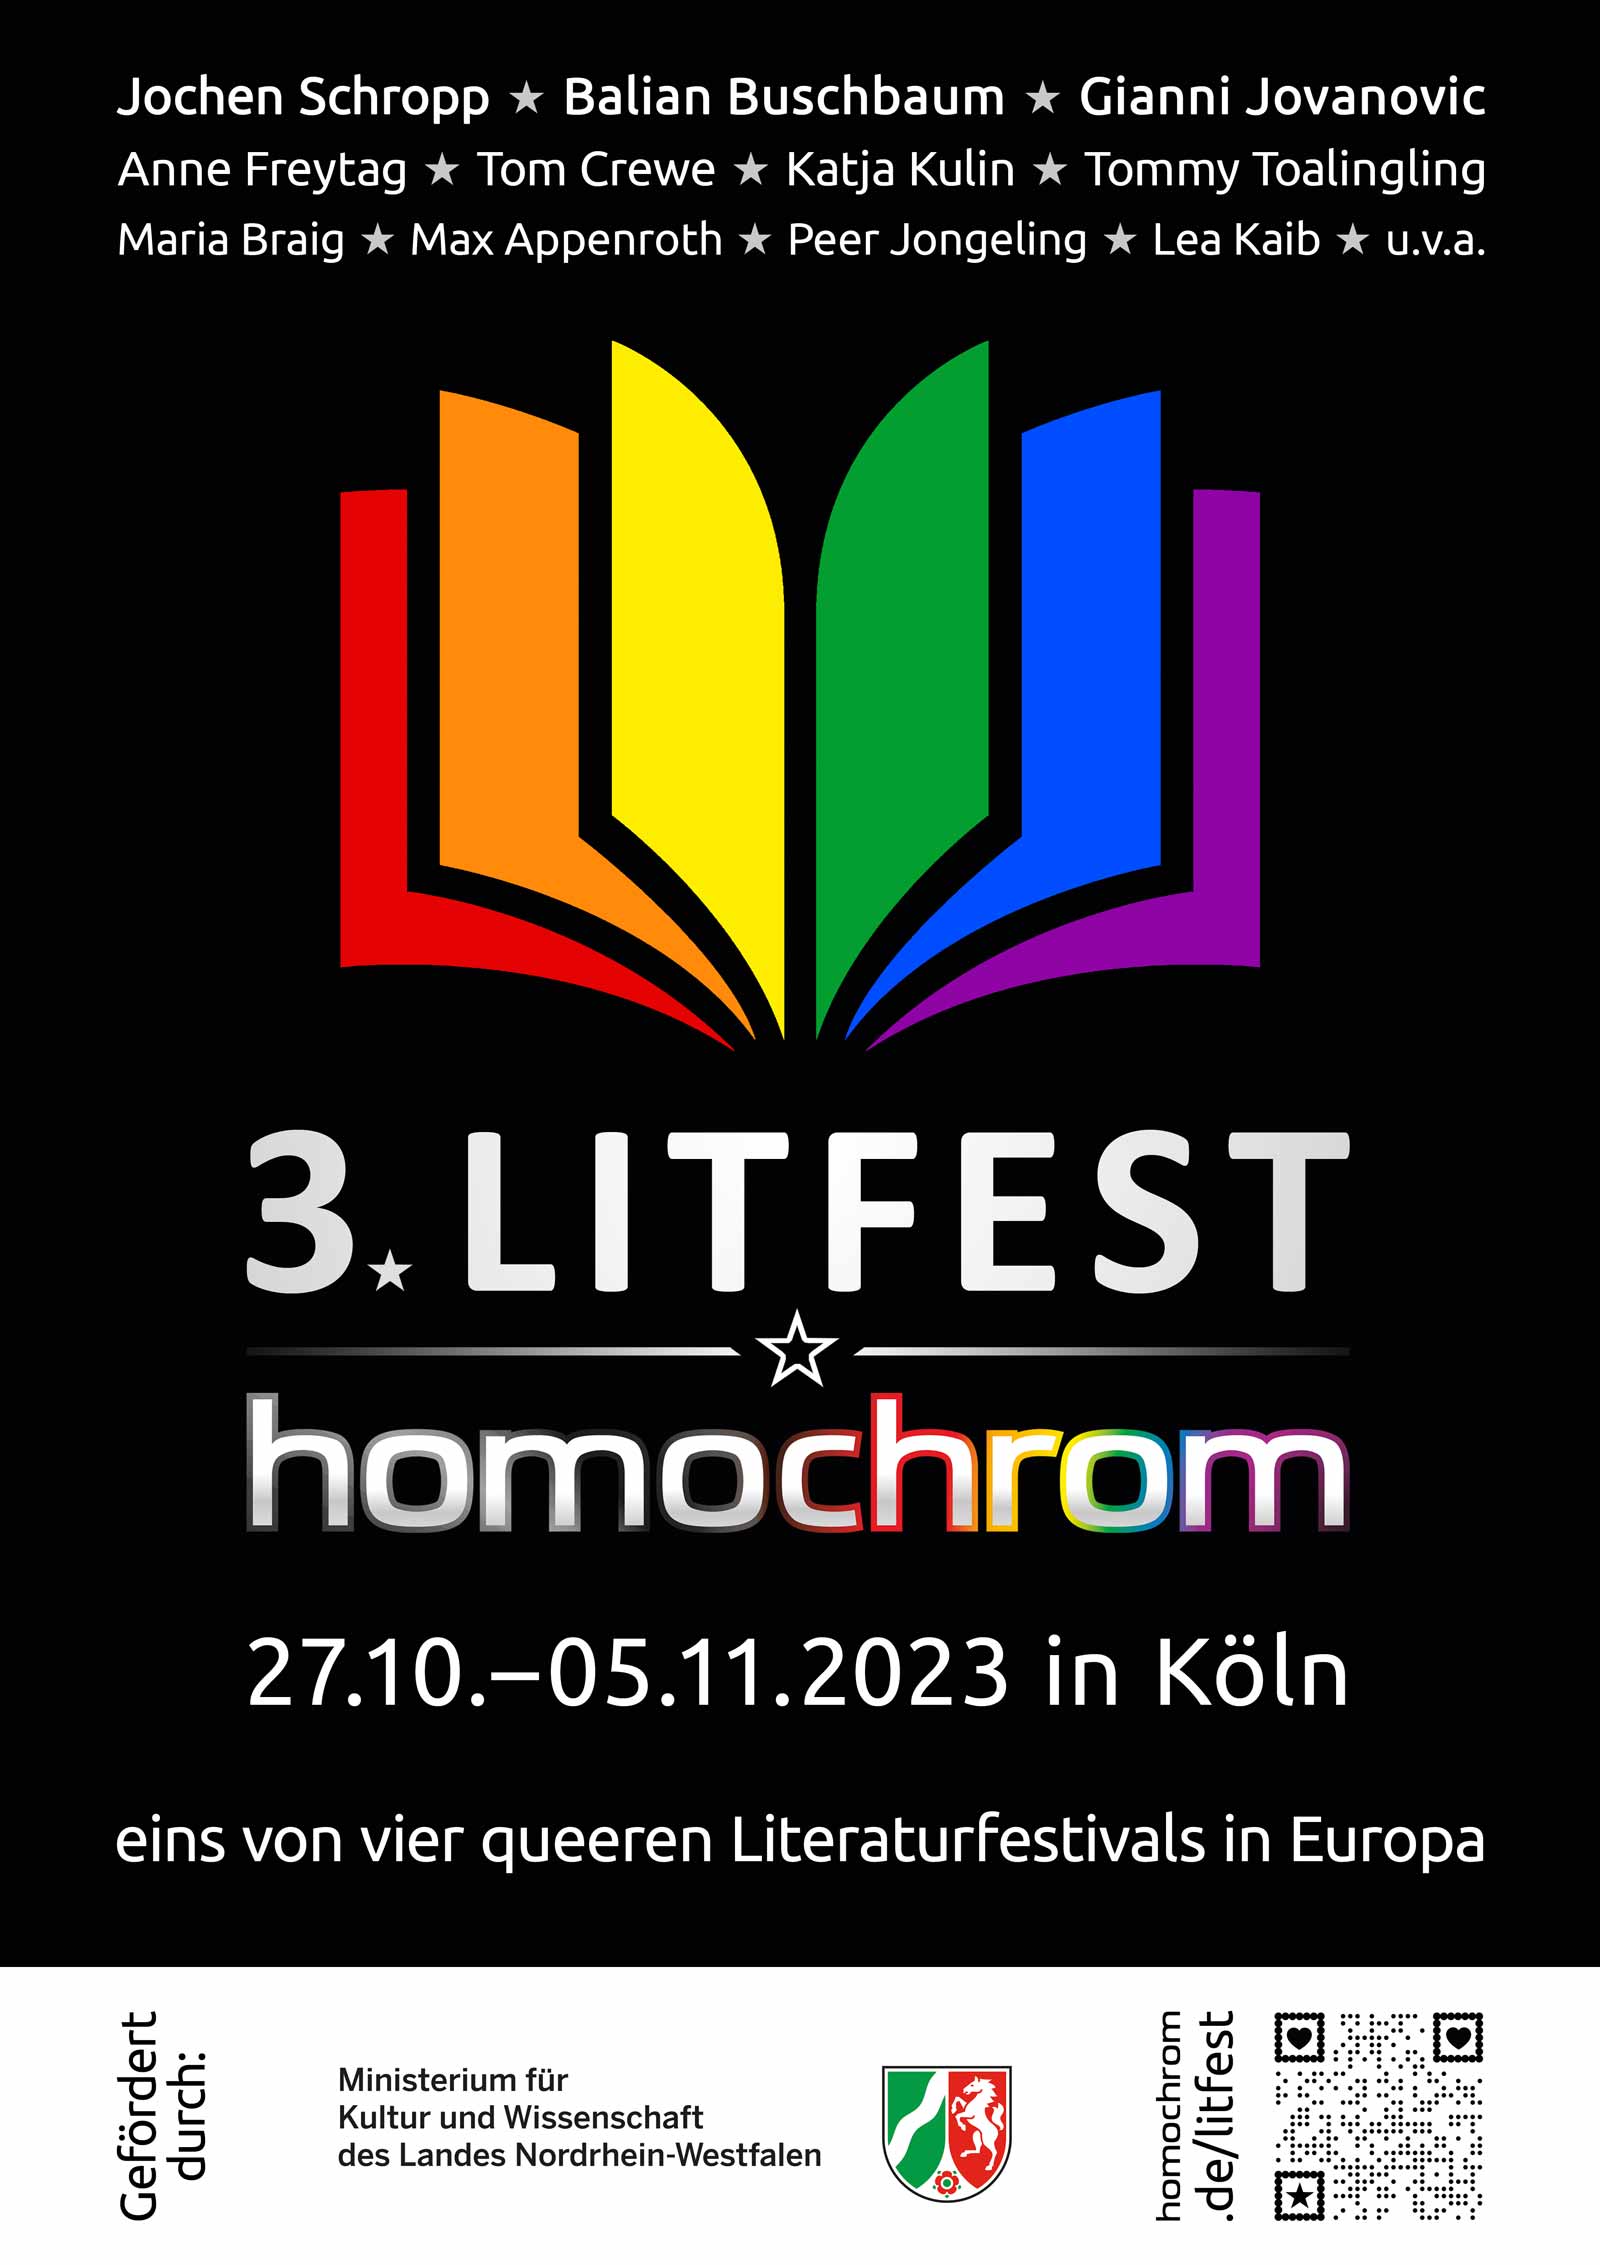 Poster für das 3. Litfest homochrom in Köln vom 27. Oktober bis 05. November 2023